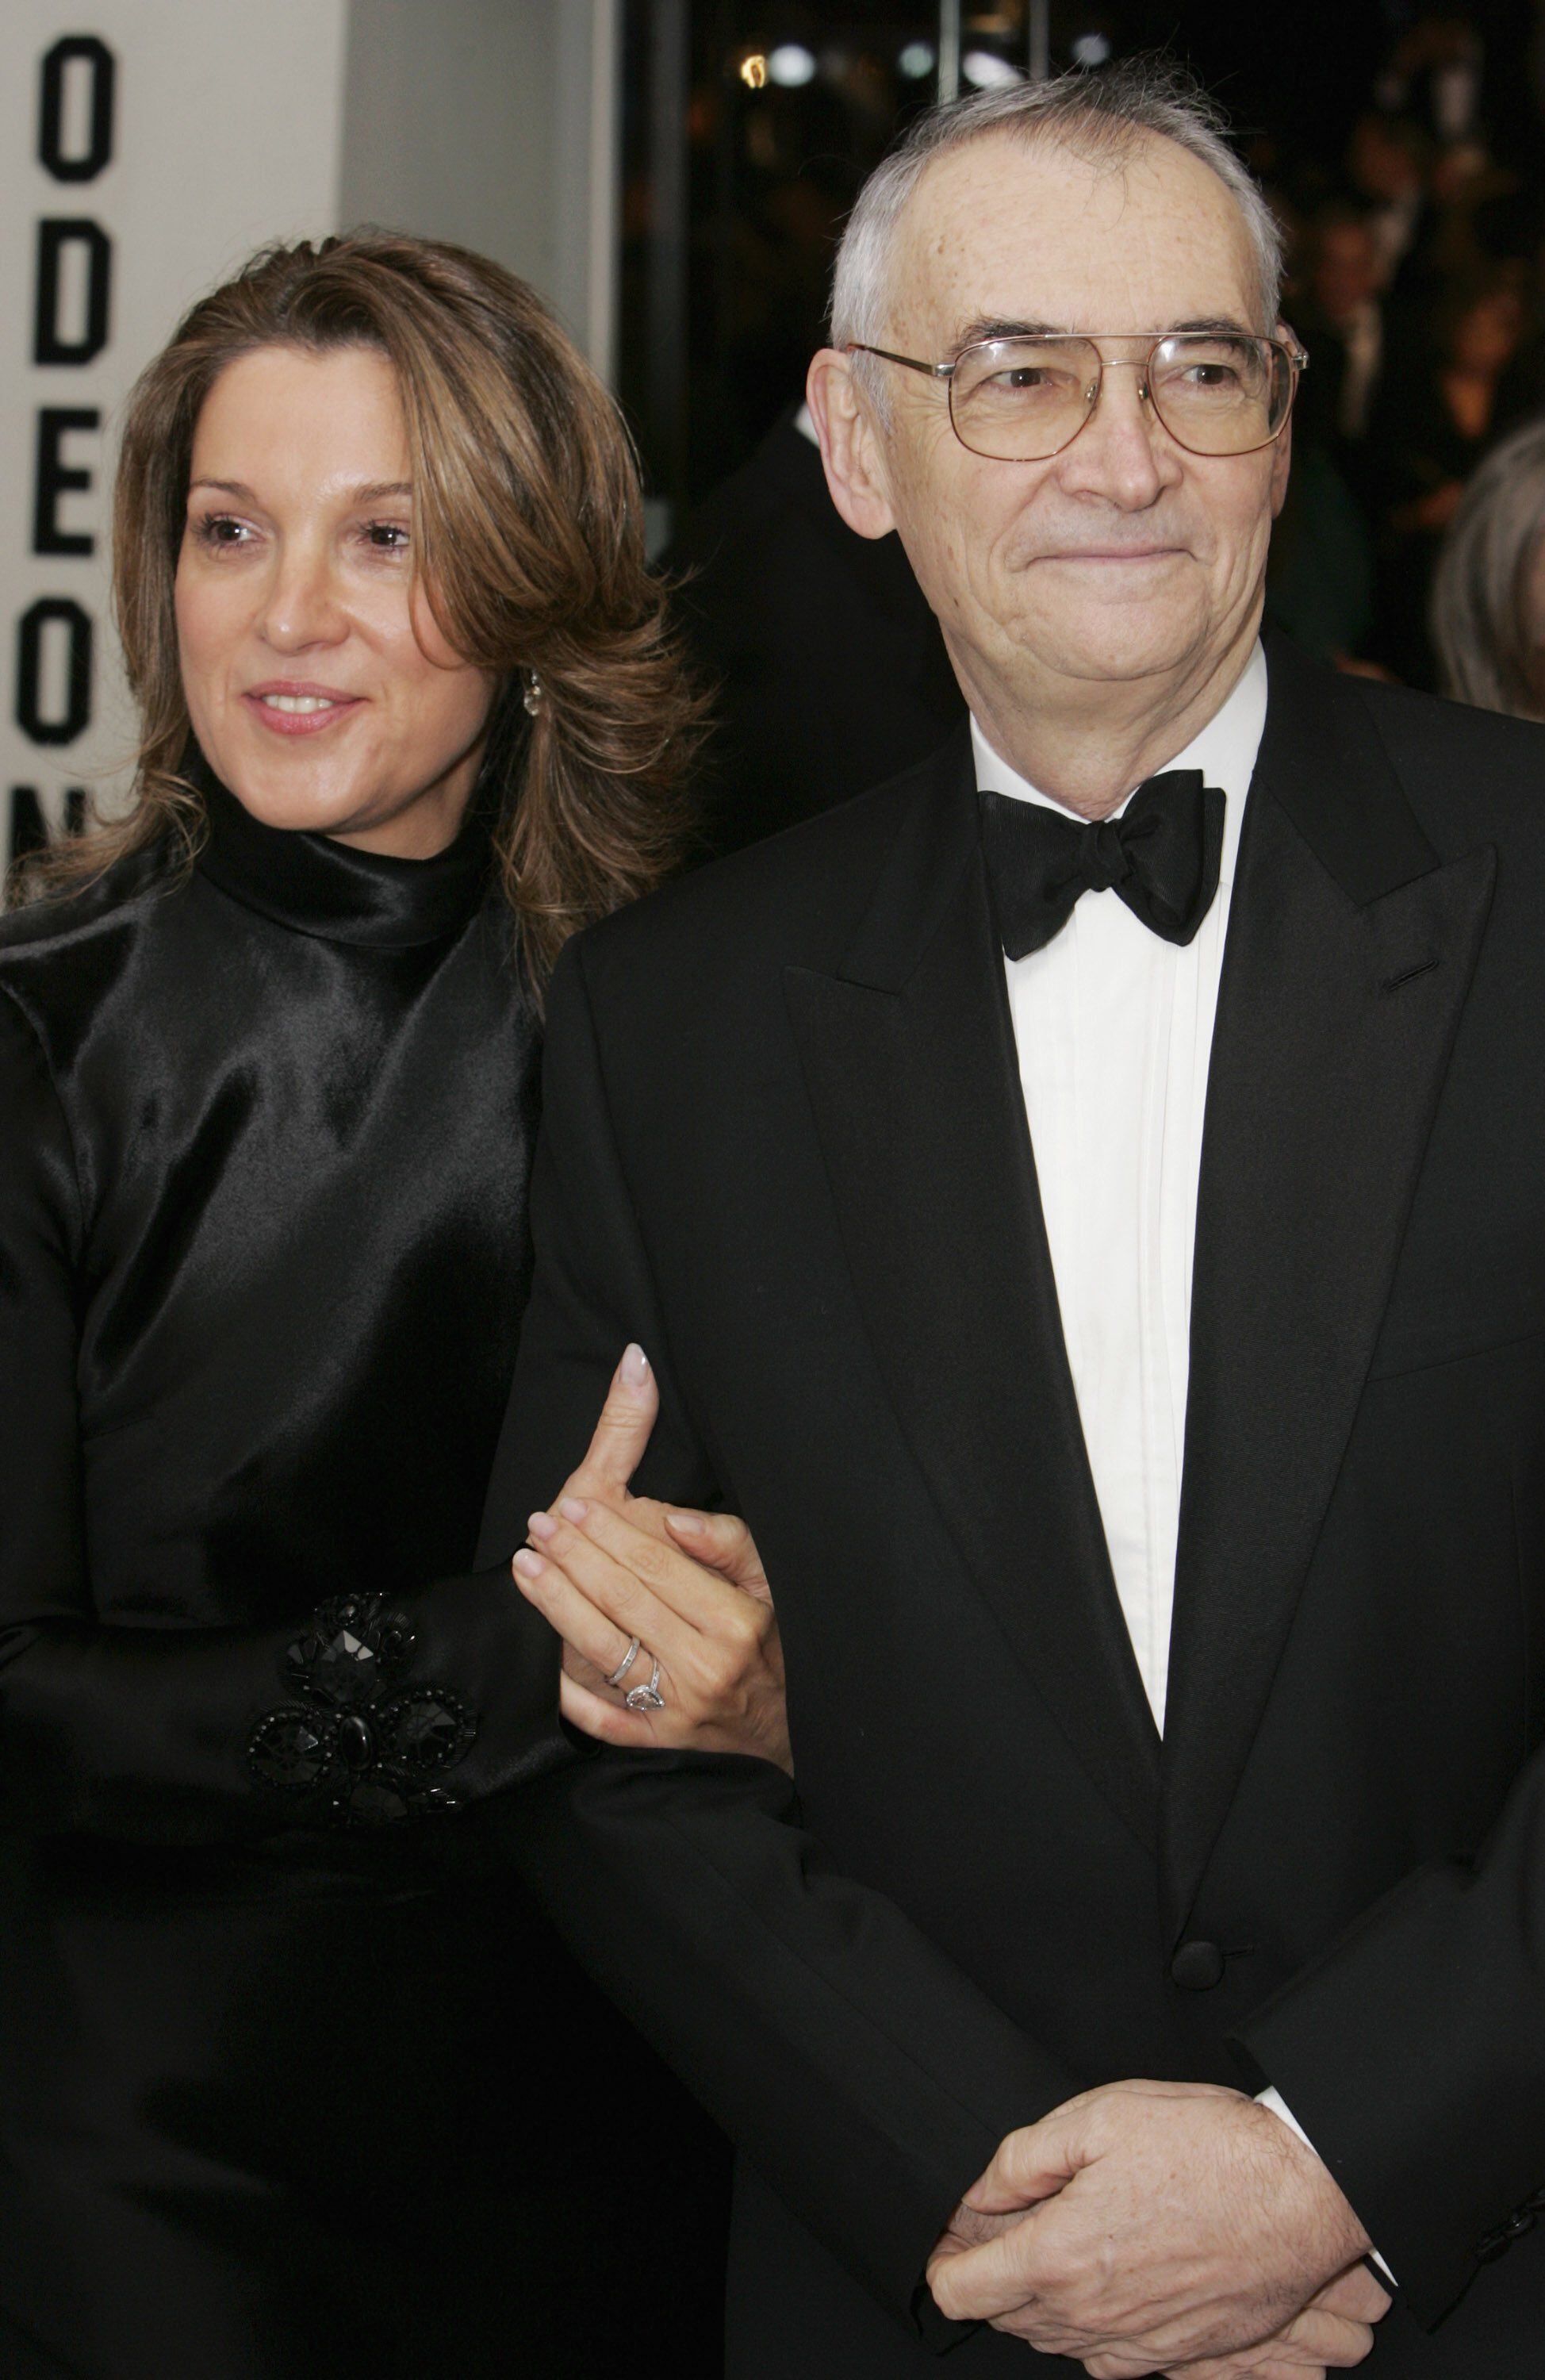 Barbara Broccoli e Michael G. Wilson na estreia em Londres de '007 - Cassino Royale' em 2006. / DAVE HOGAN / GETTY IMAGES